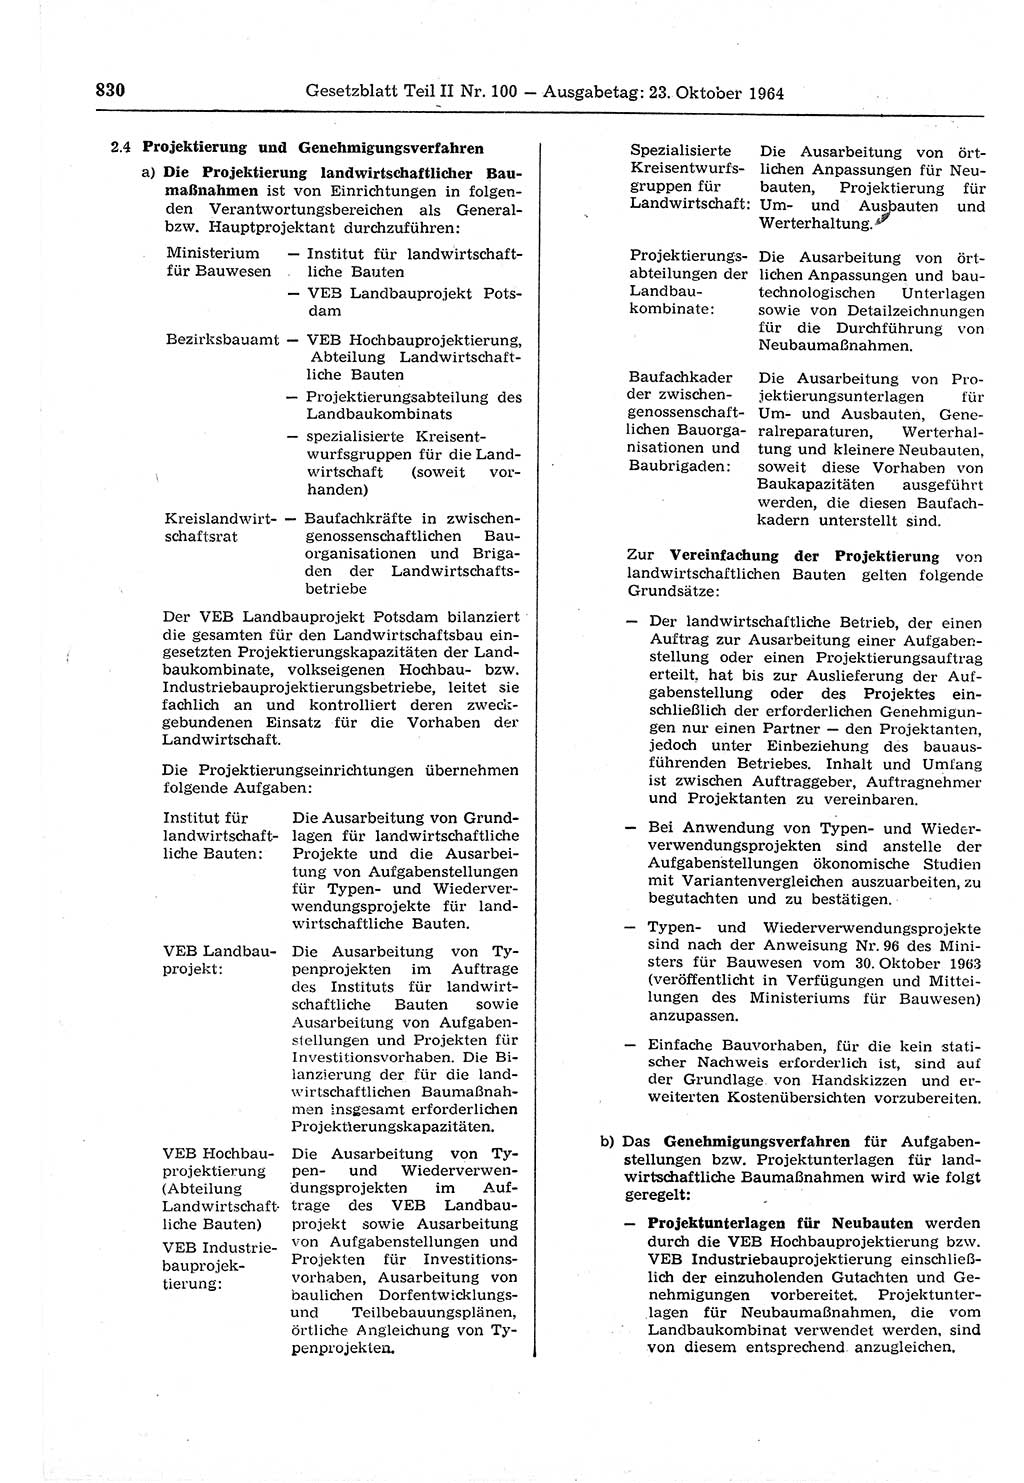 Gesetzblatt (GBl.) der Deutschen Demokratischen Republik (DDR) Teil ⅠⅠ 1964, Seite 830 (GBl. DDR ⅠⅠ 1964, S. 830)